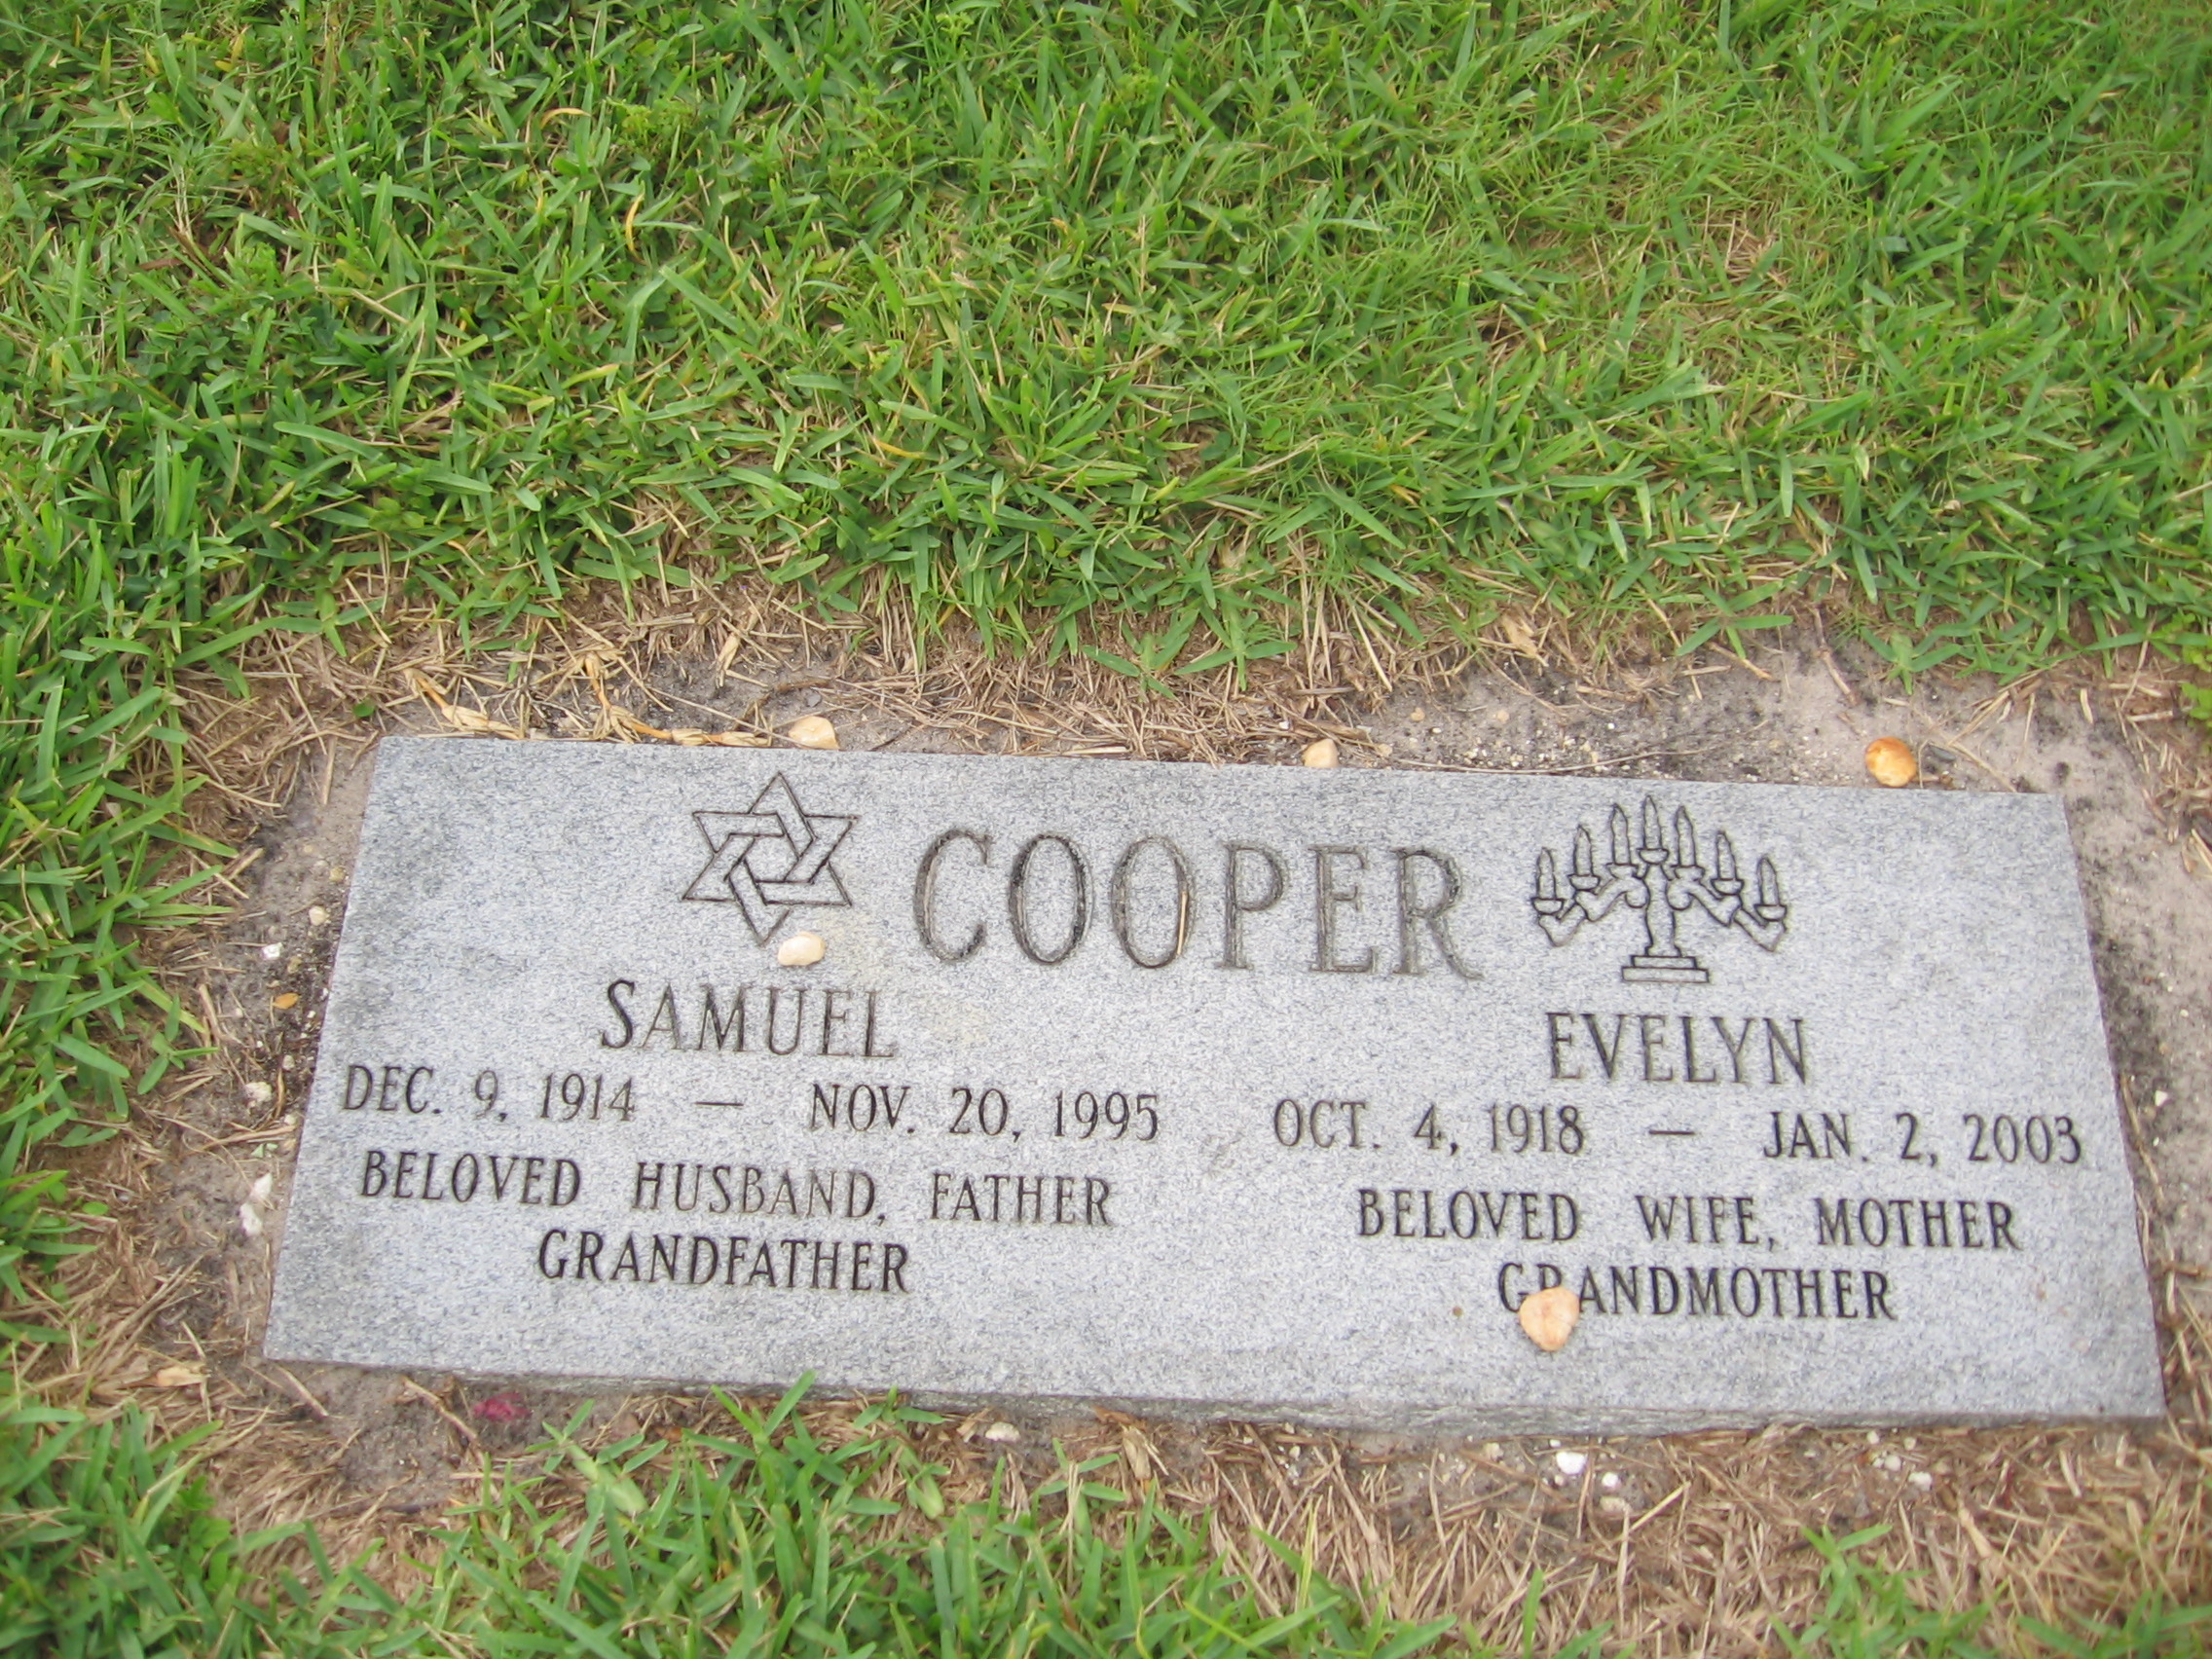 Samuel Cooper